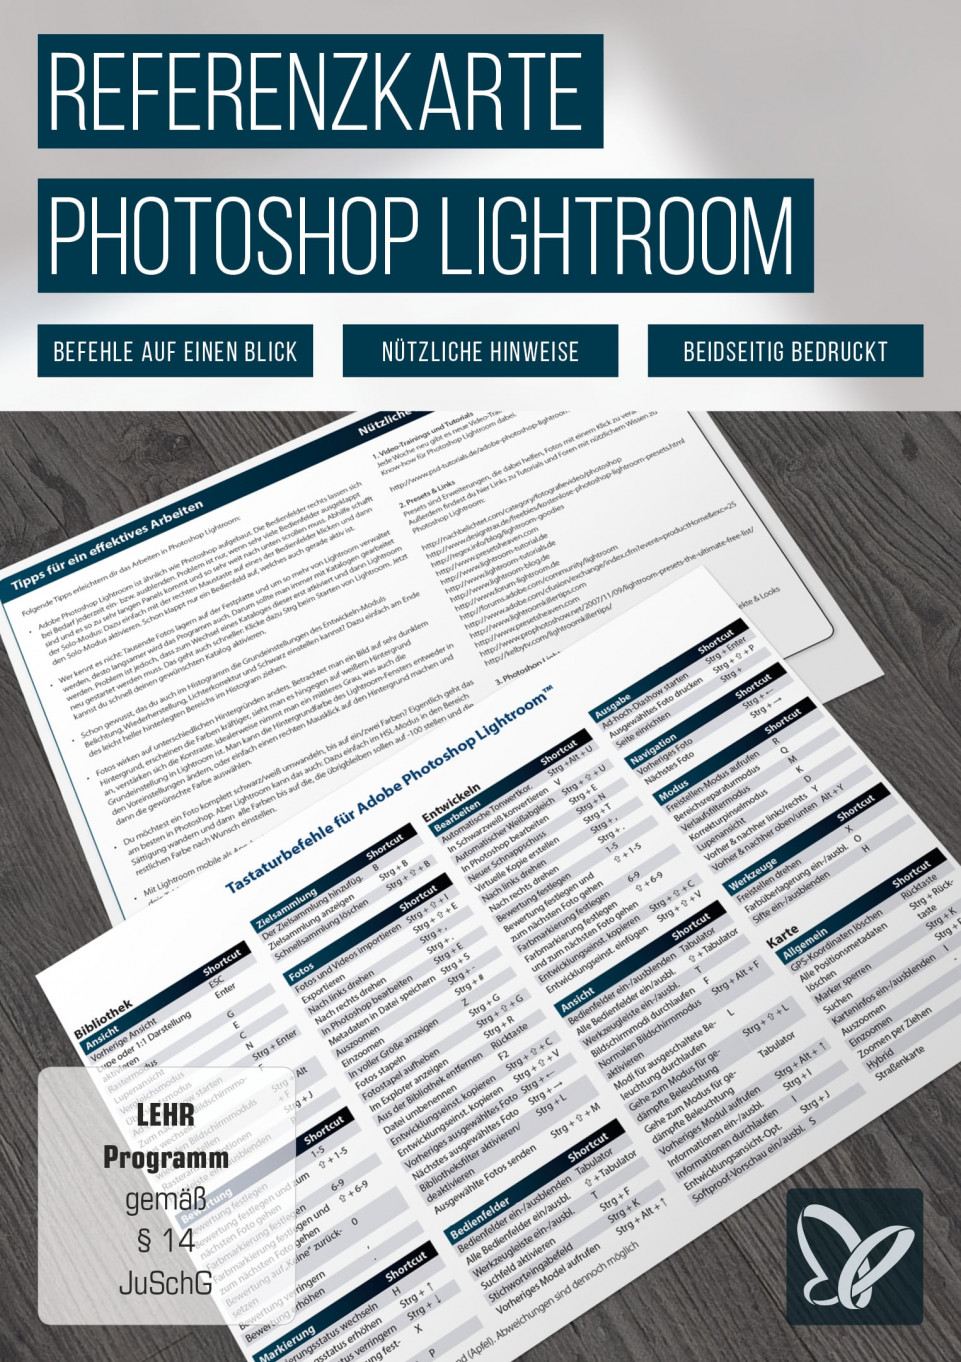 Referenzkarte für Photoshop Lightroom